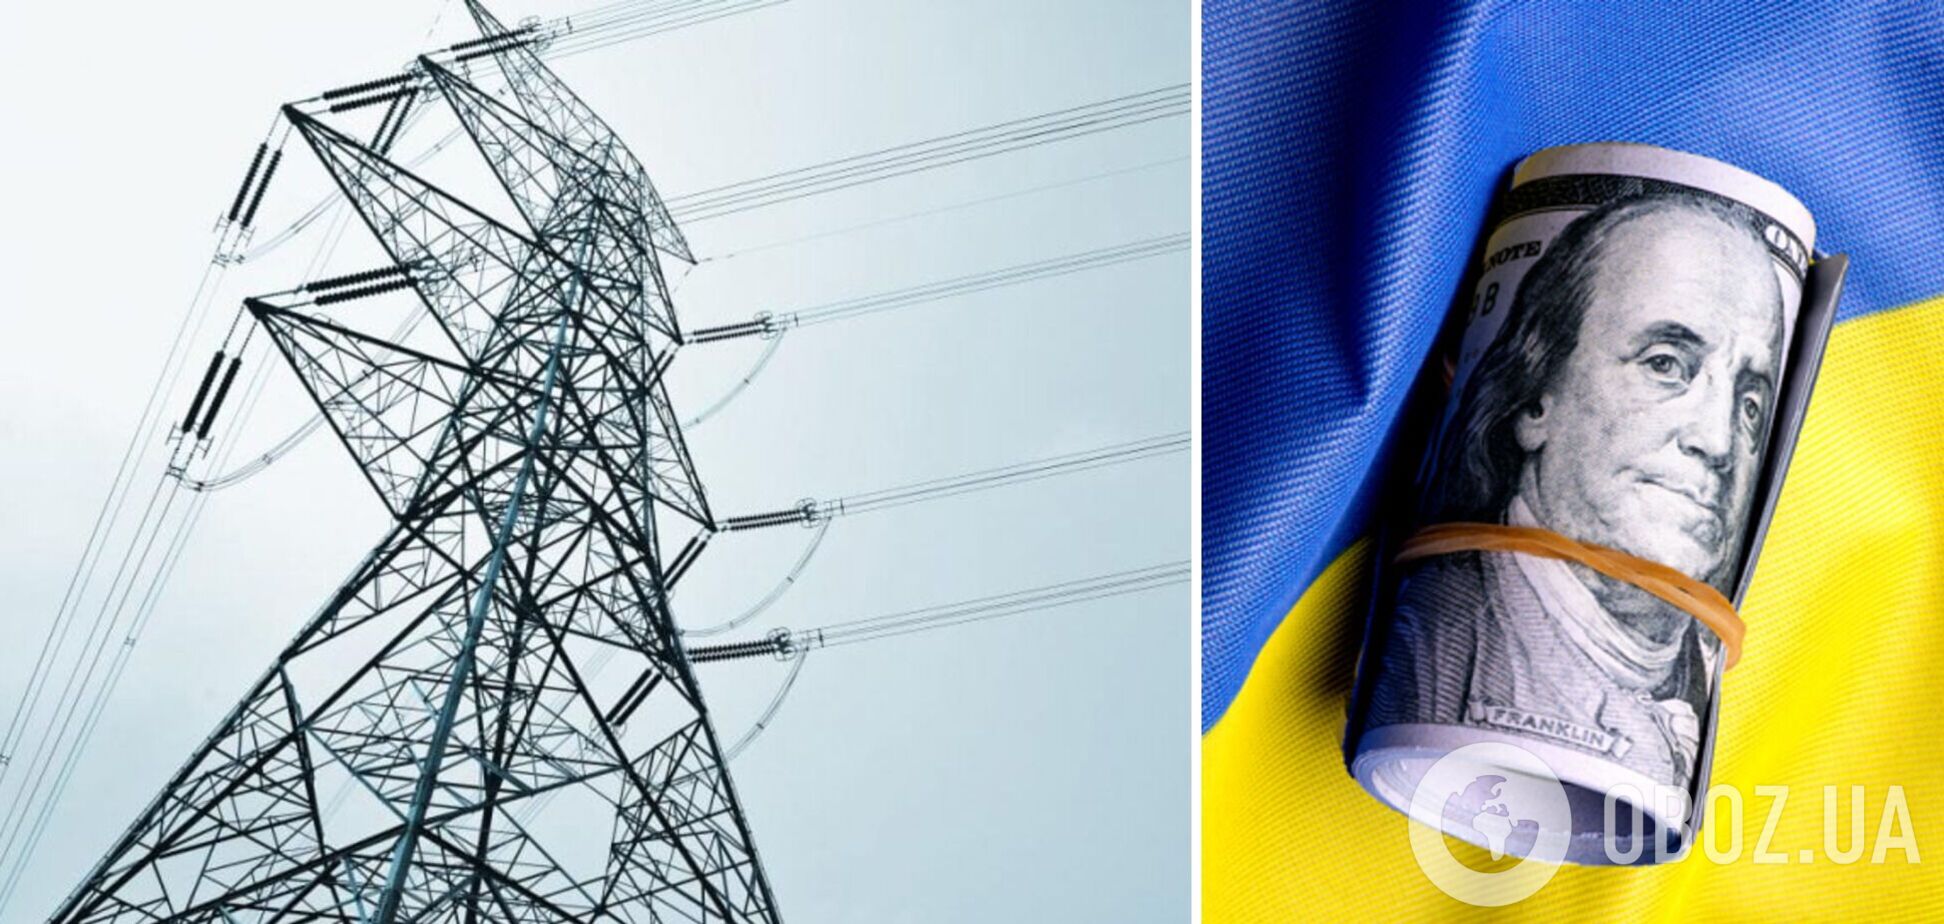 Энергетика Украины нуждается в срочном решении долгового кризиса, – Конеченков